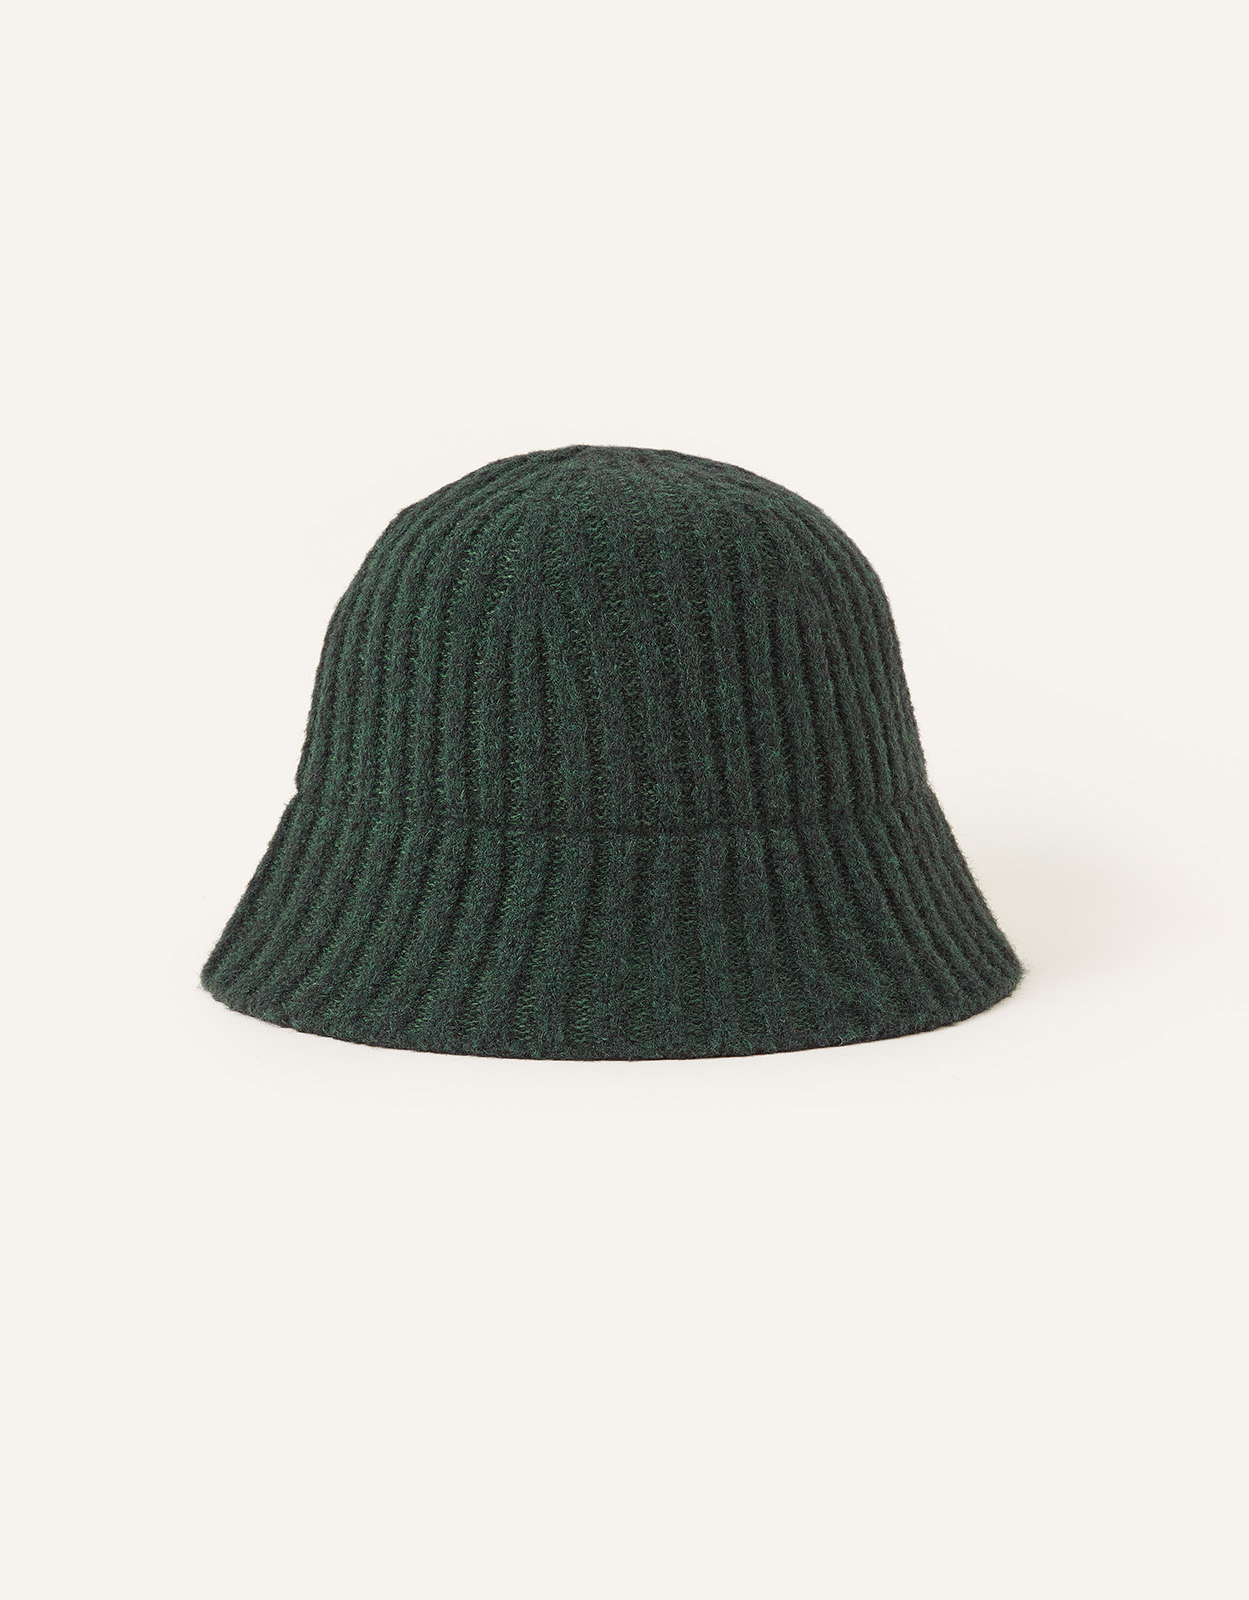 Accessorize Women's Knit Bucket Hat Green